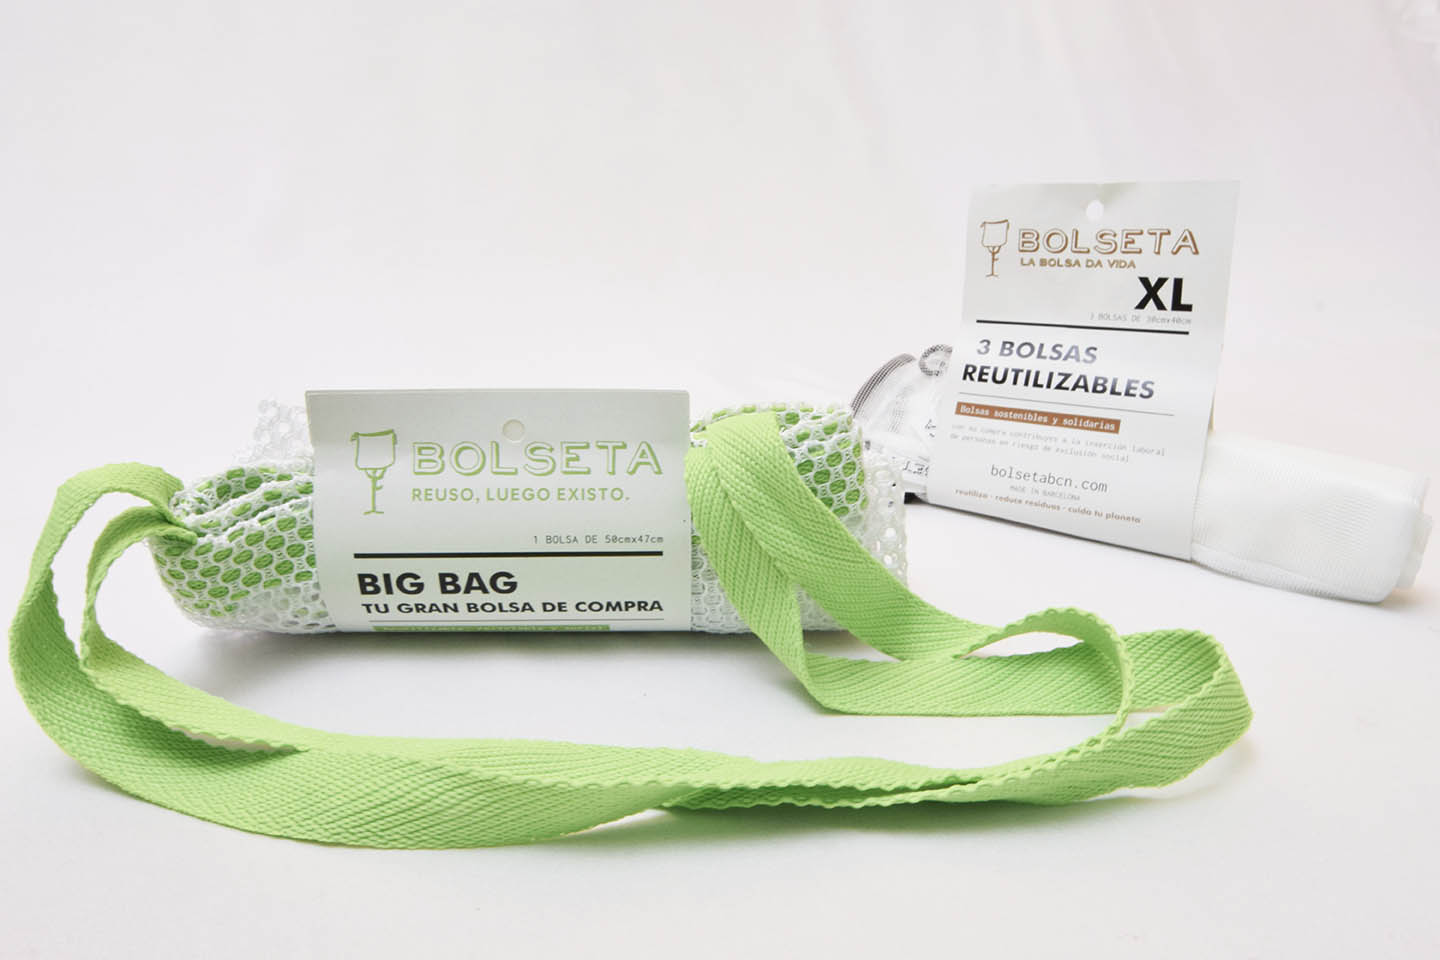 Bolsas de plástico, algodón y papel. Pros y contras - BOLSETA BCN